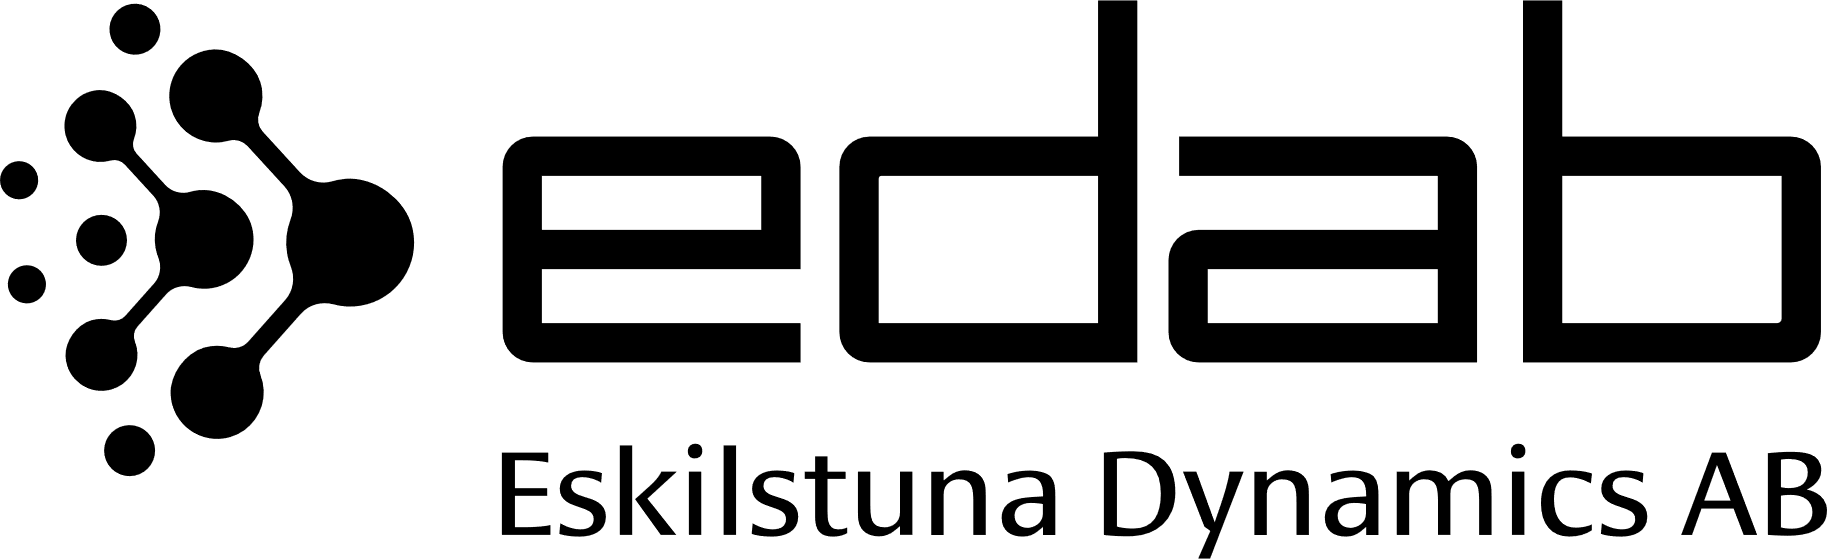 Edab logo svart